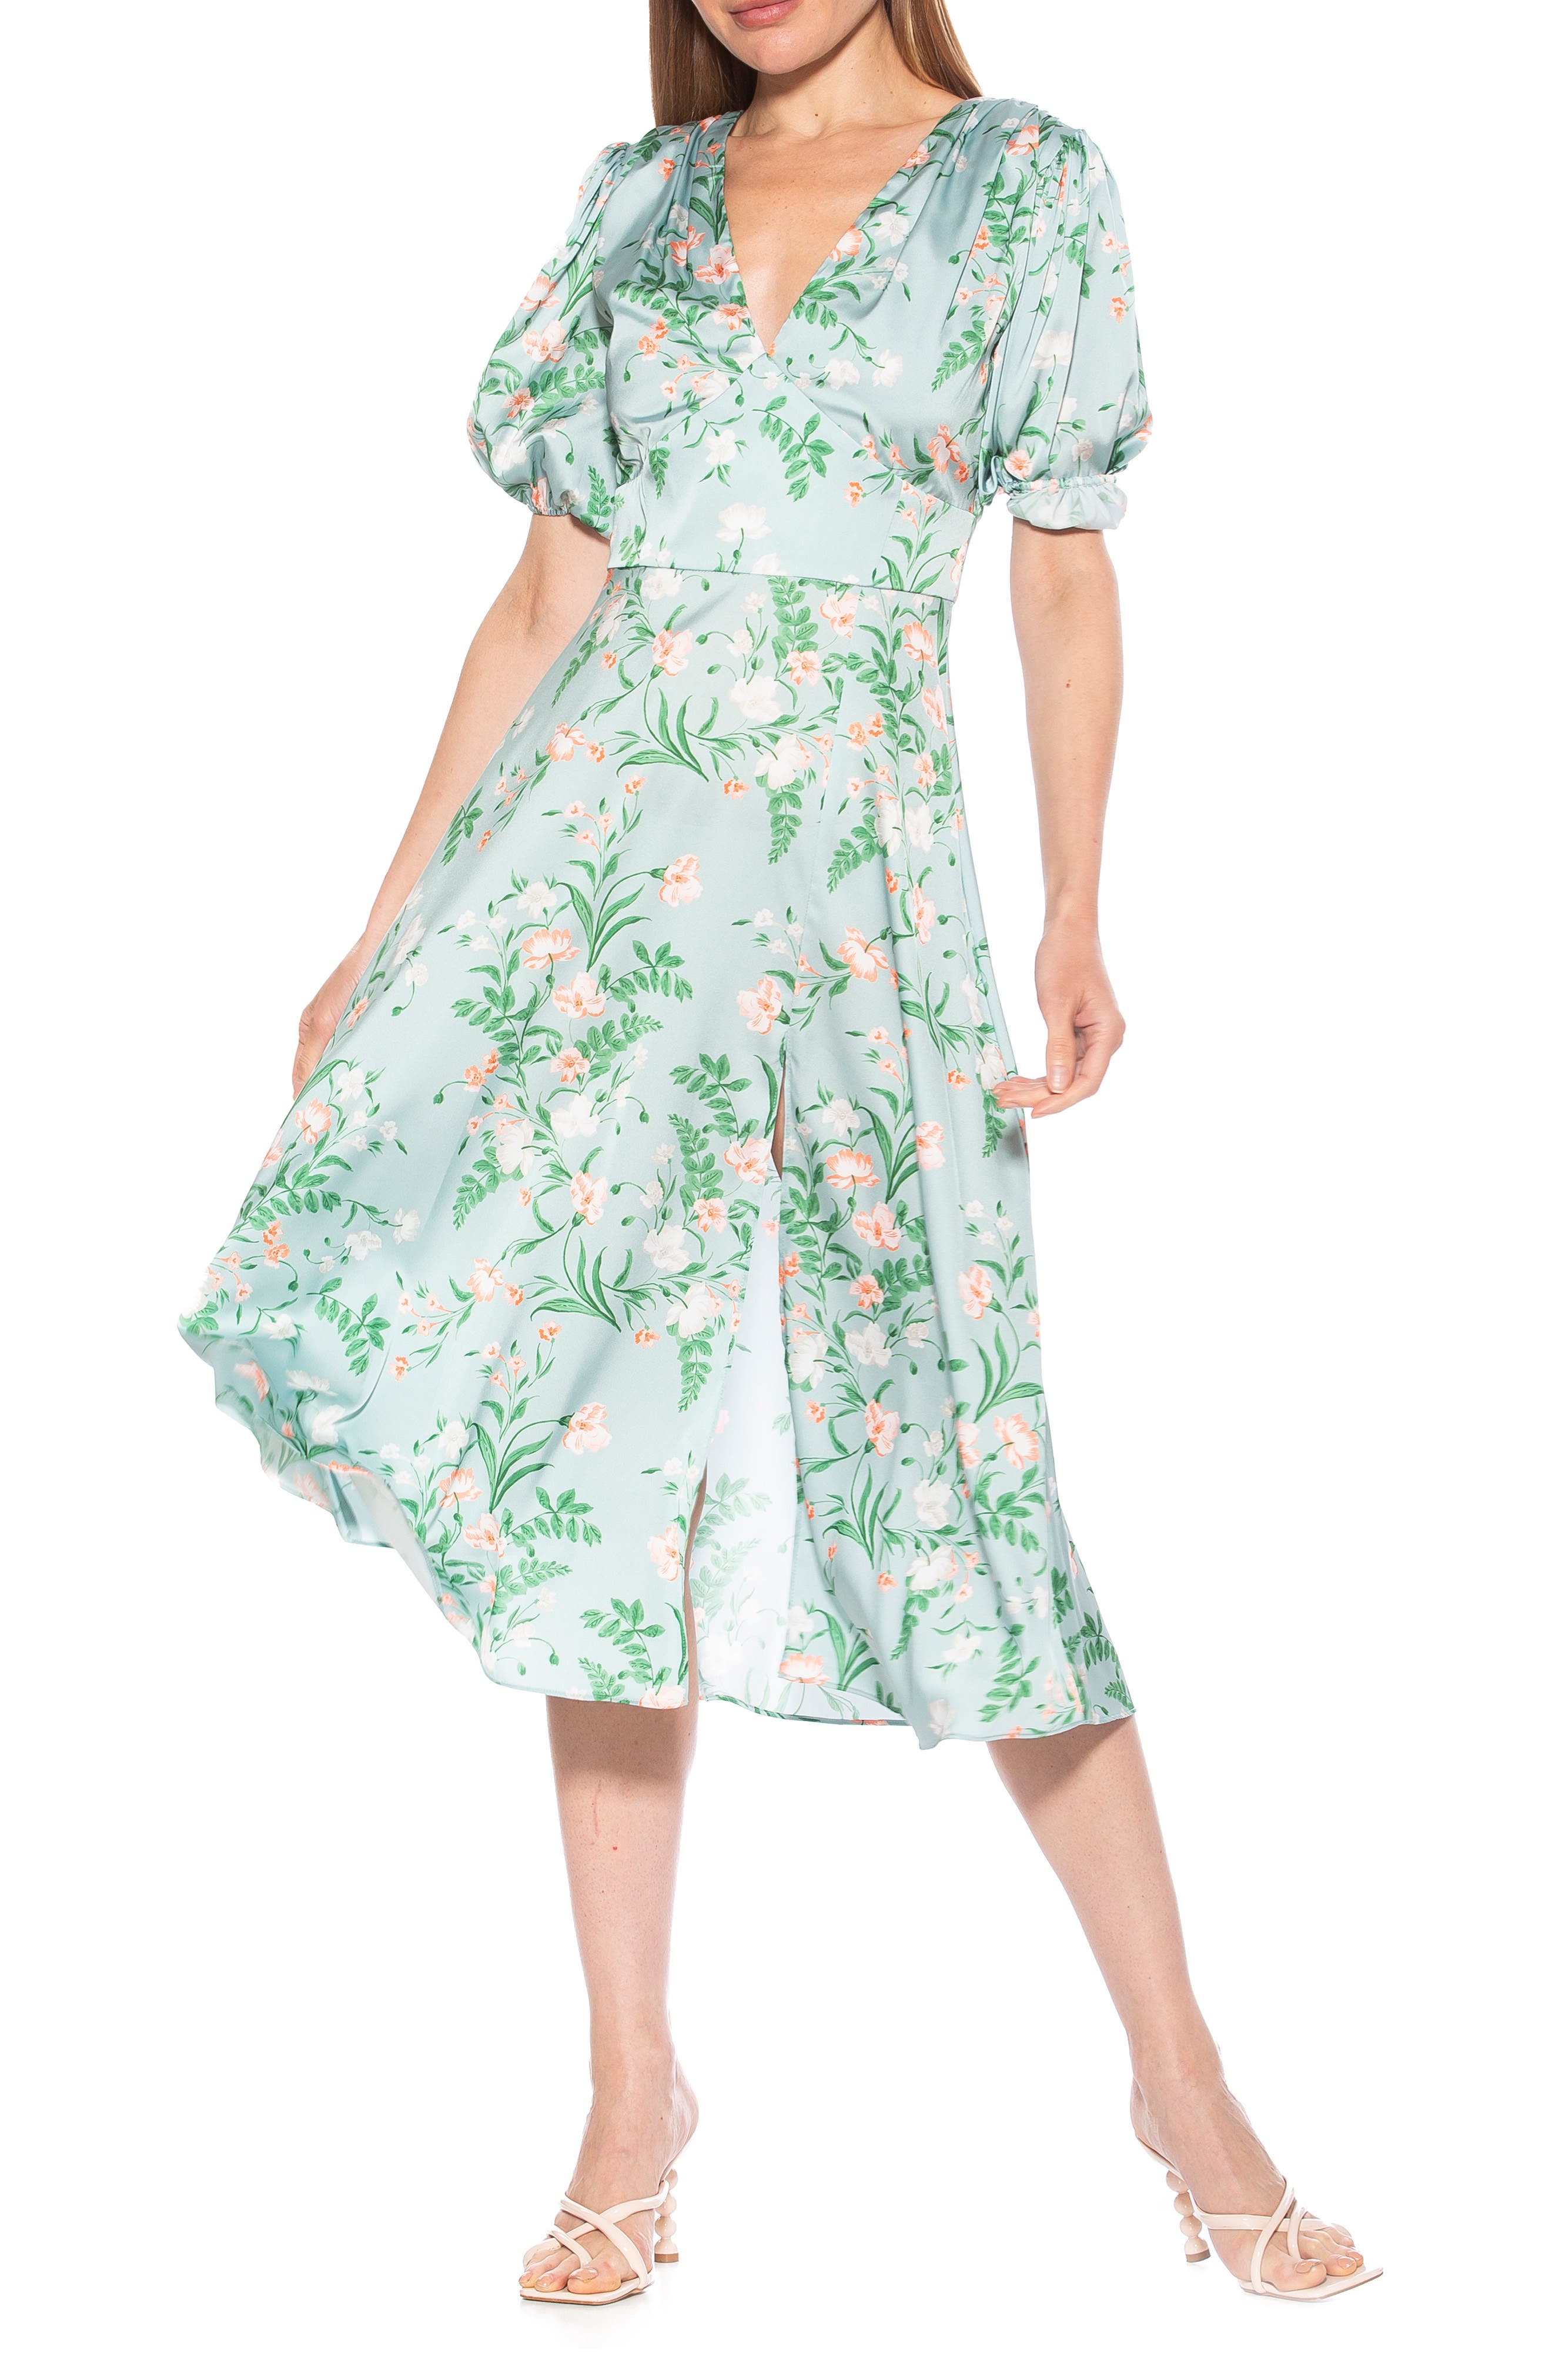 1940s Dresses | 40s Dress, Swing Dress, Tea Dresses Alexia Admor V-Neck Puff Sleeve Midi Dress in Sage Floral at Nordstrom Rack Size 14 $79.97 AT vintagedancer.com